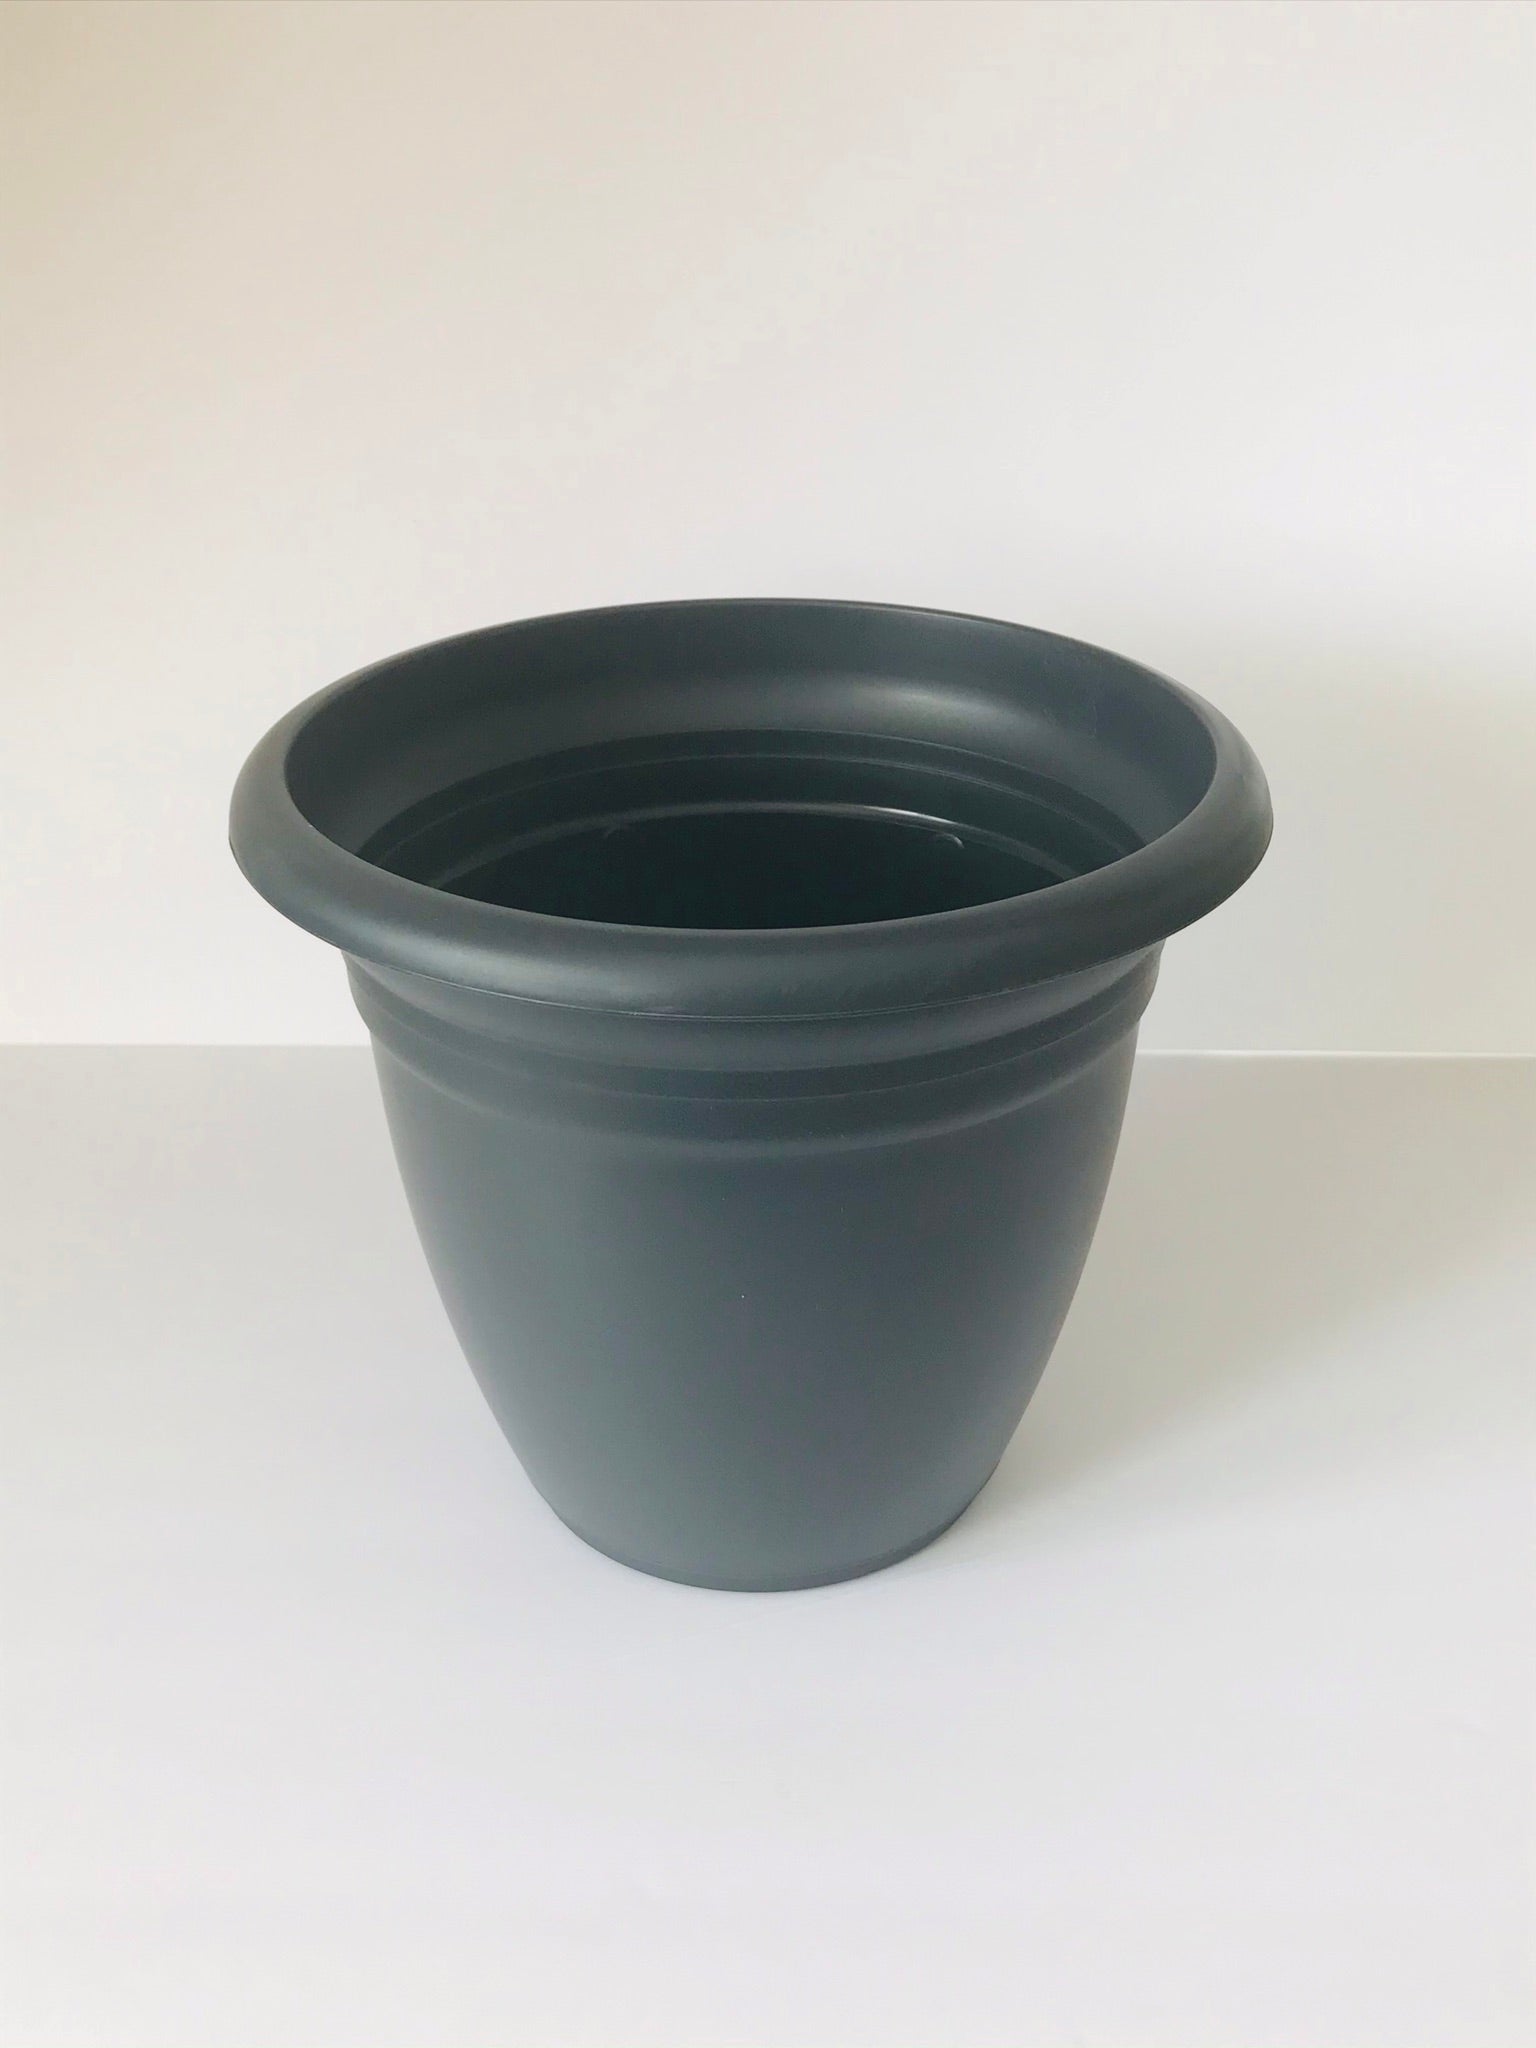 12" Charcoal Gray Pot & Saucer